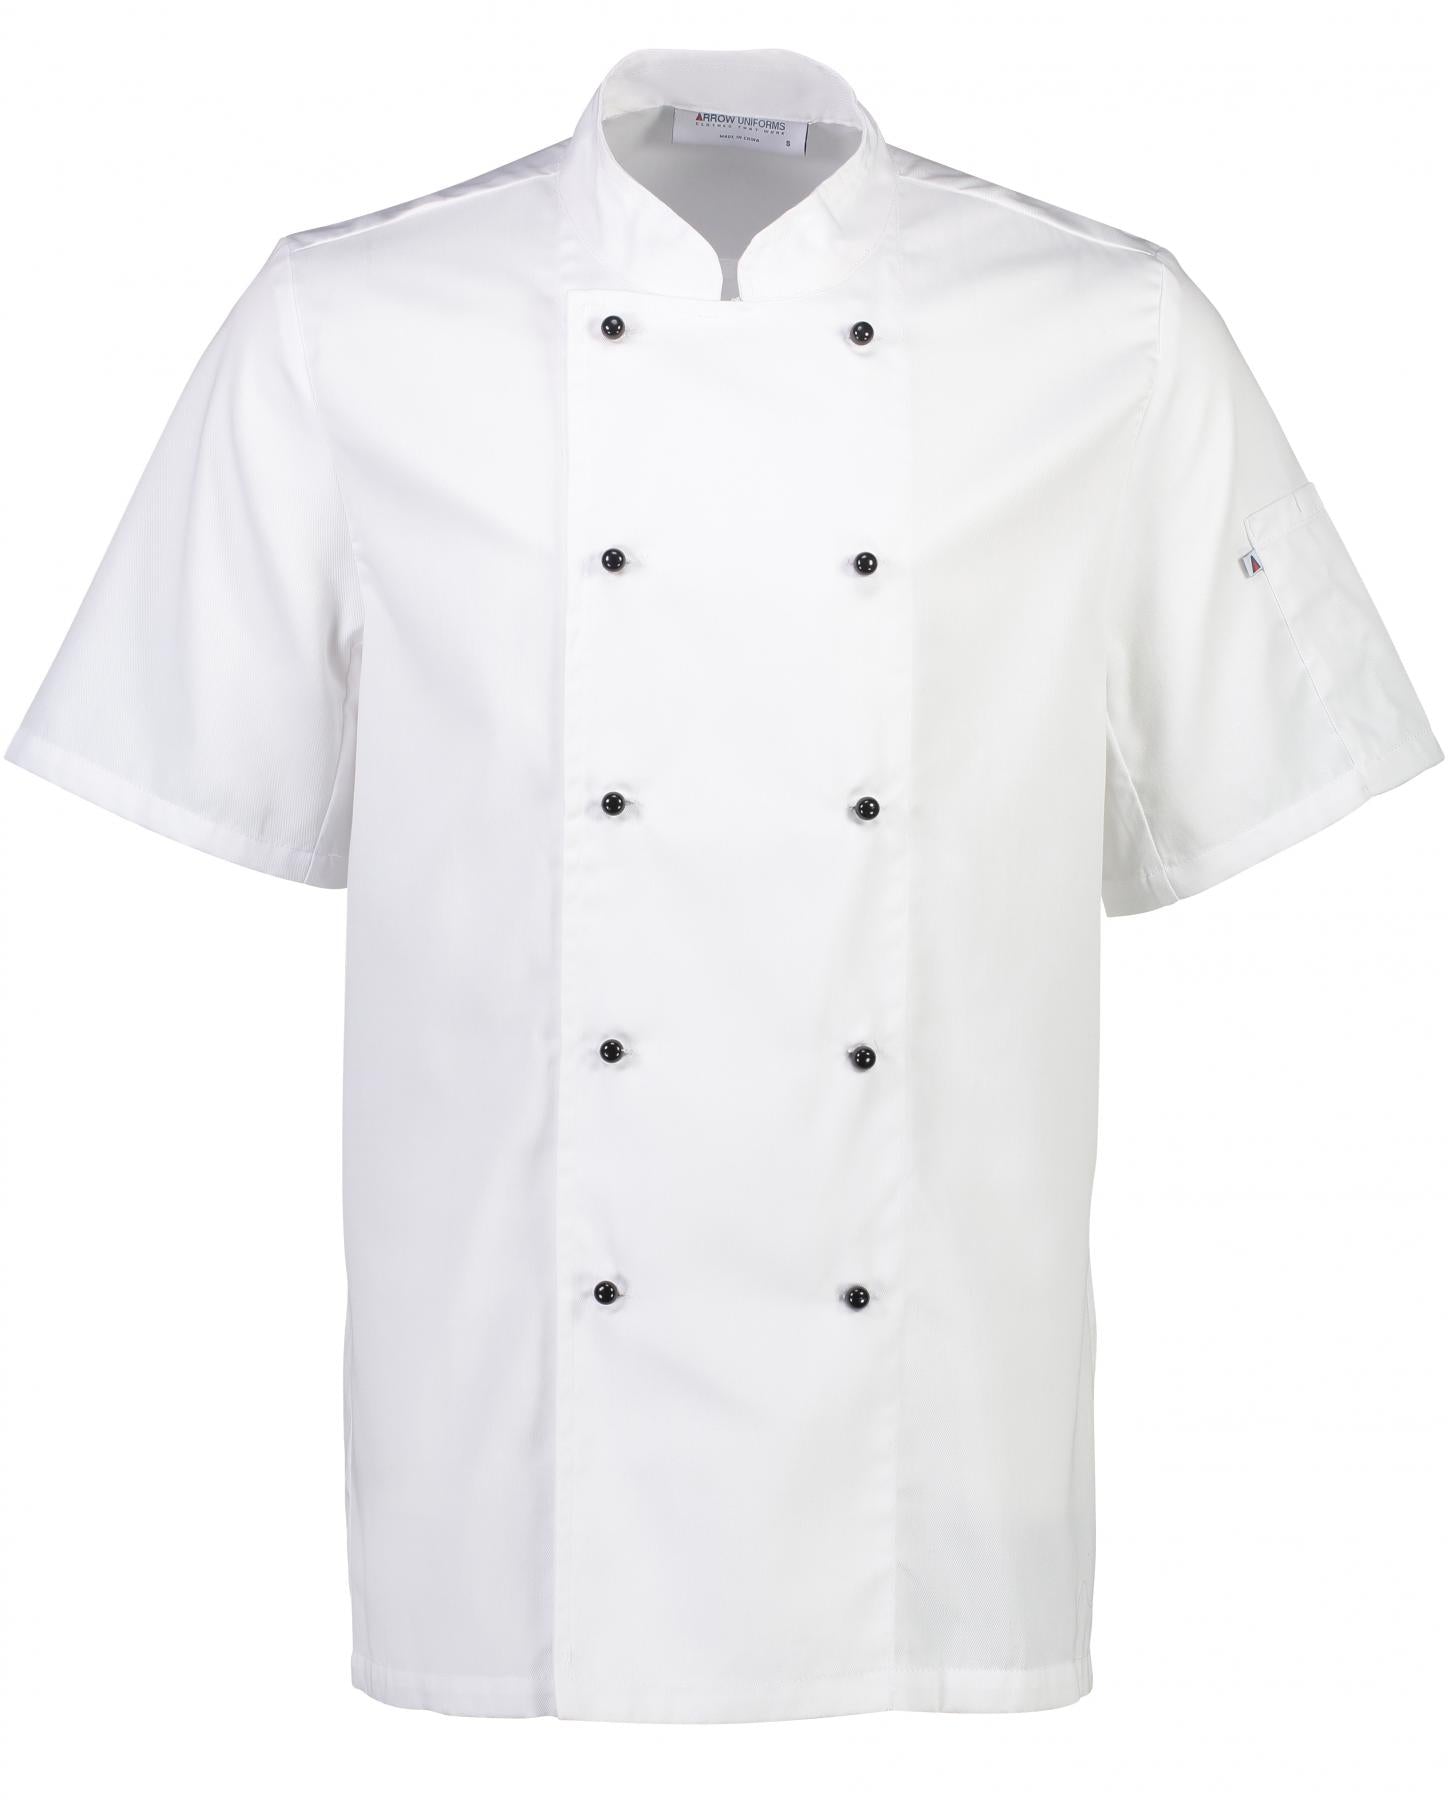 Club II Chefs Short Sleeve Jacket